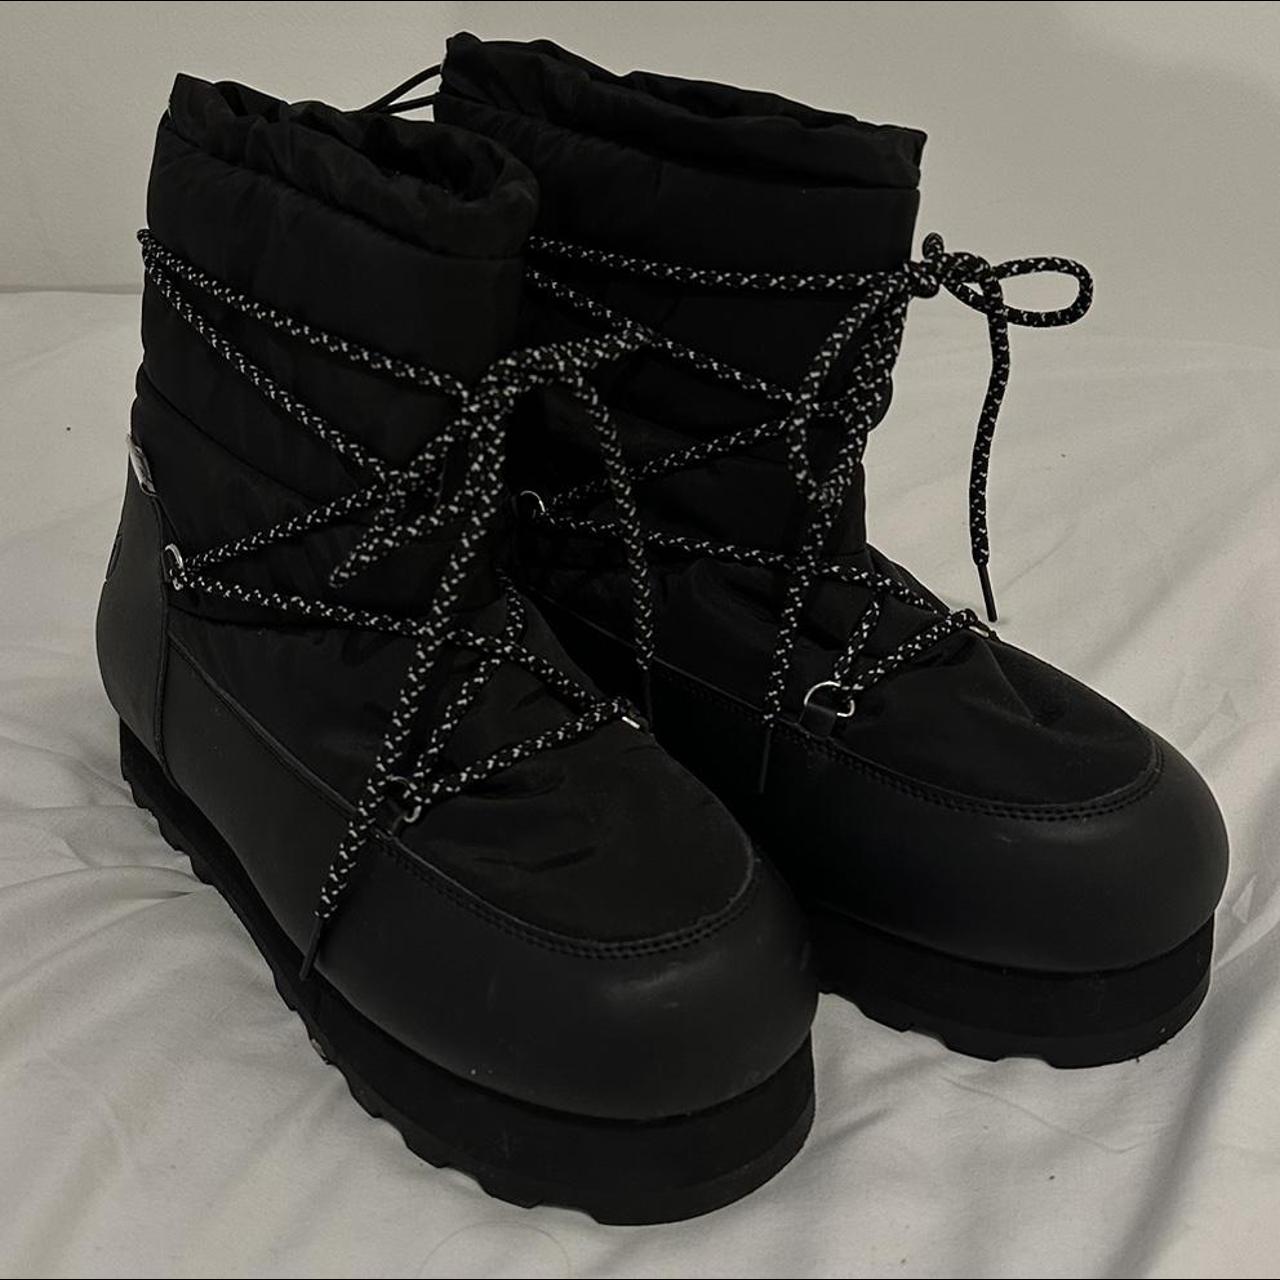 Juicy Couture snow boots size 7.5-8.5 (41) Super... - Depop